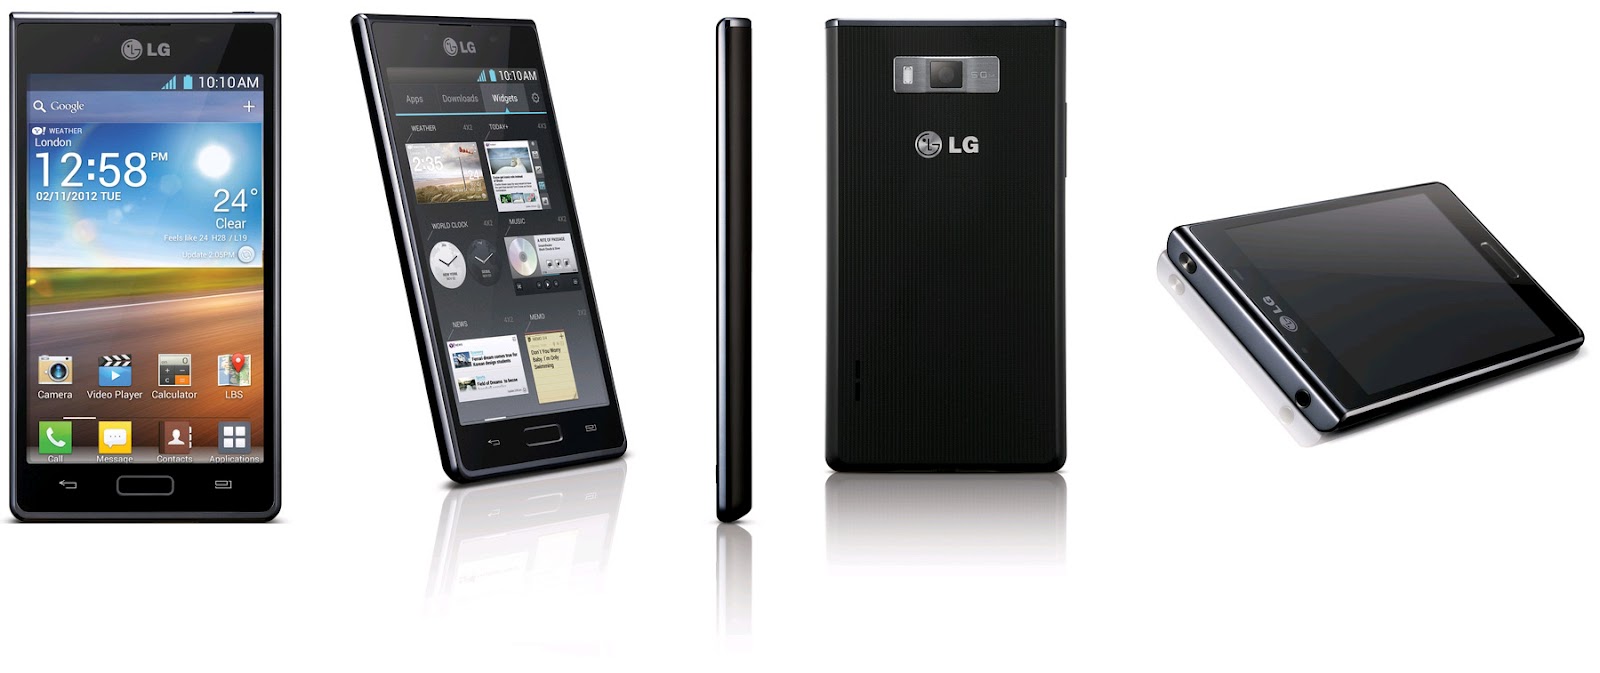 lg-optimus-l7-p700-specifications-features-price-details-lg-optimus-l7